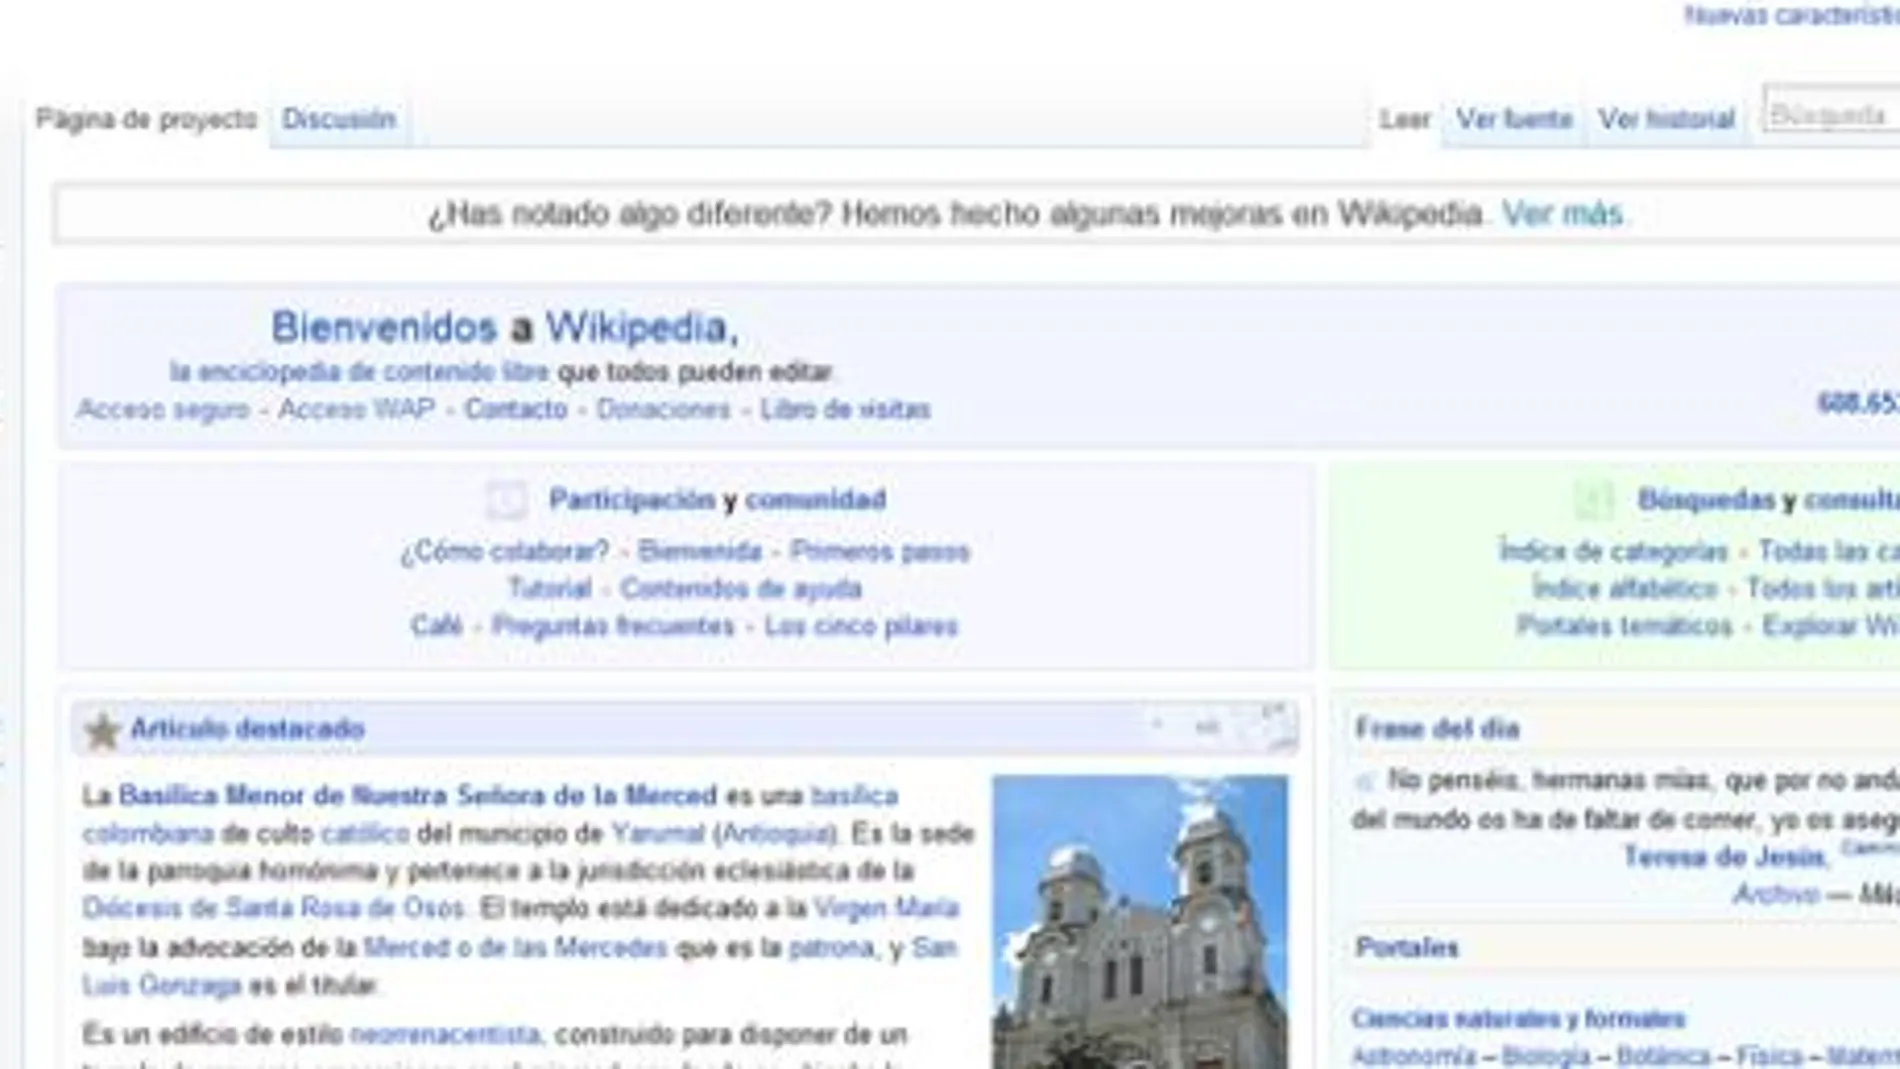 Libro de visitas - Wikipedia, la enciclopedia libre